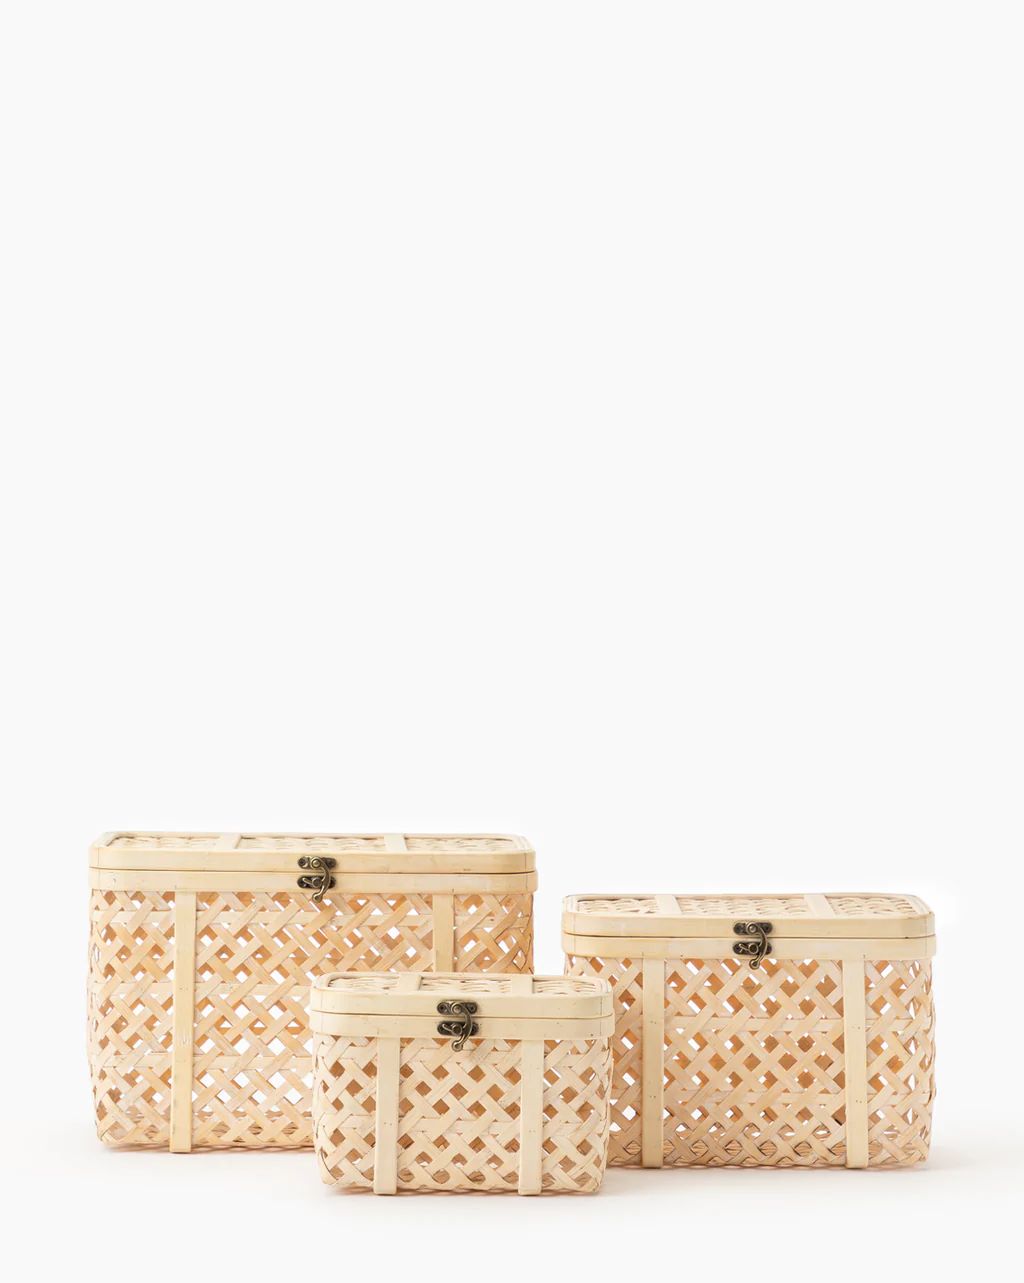 Woven Bamboo Box | McGee & Co.